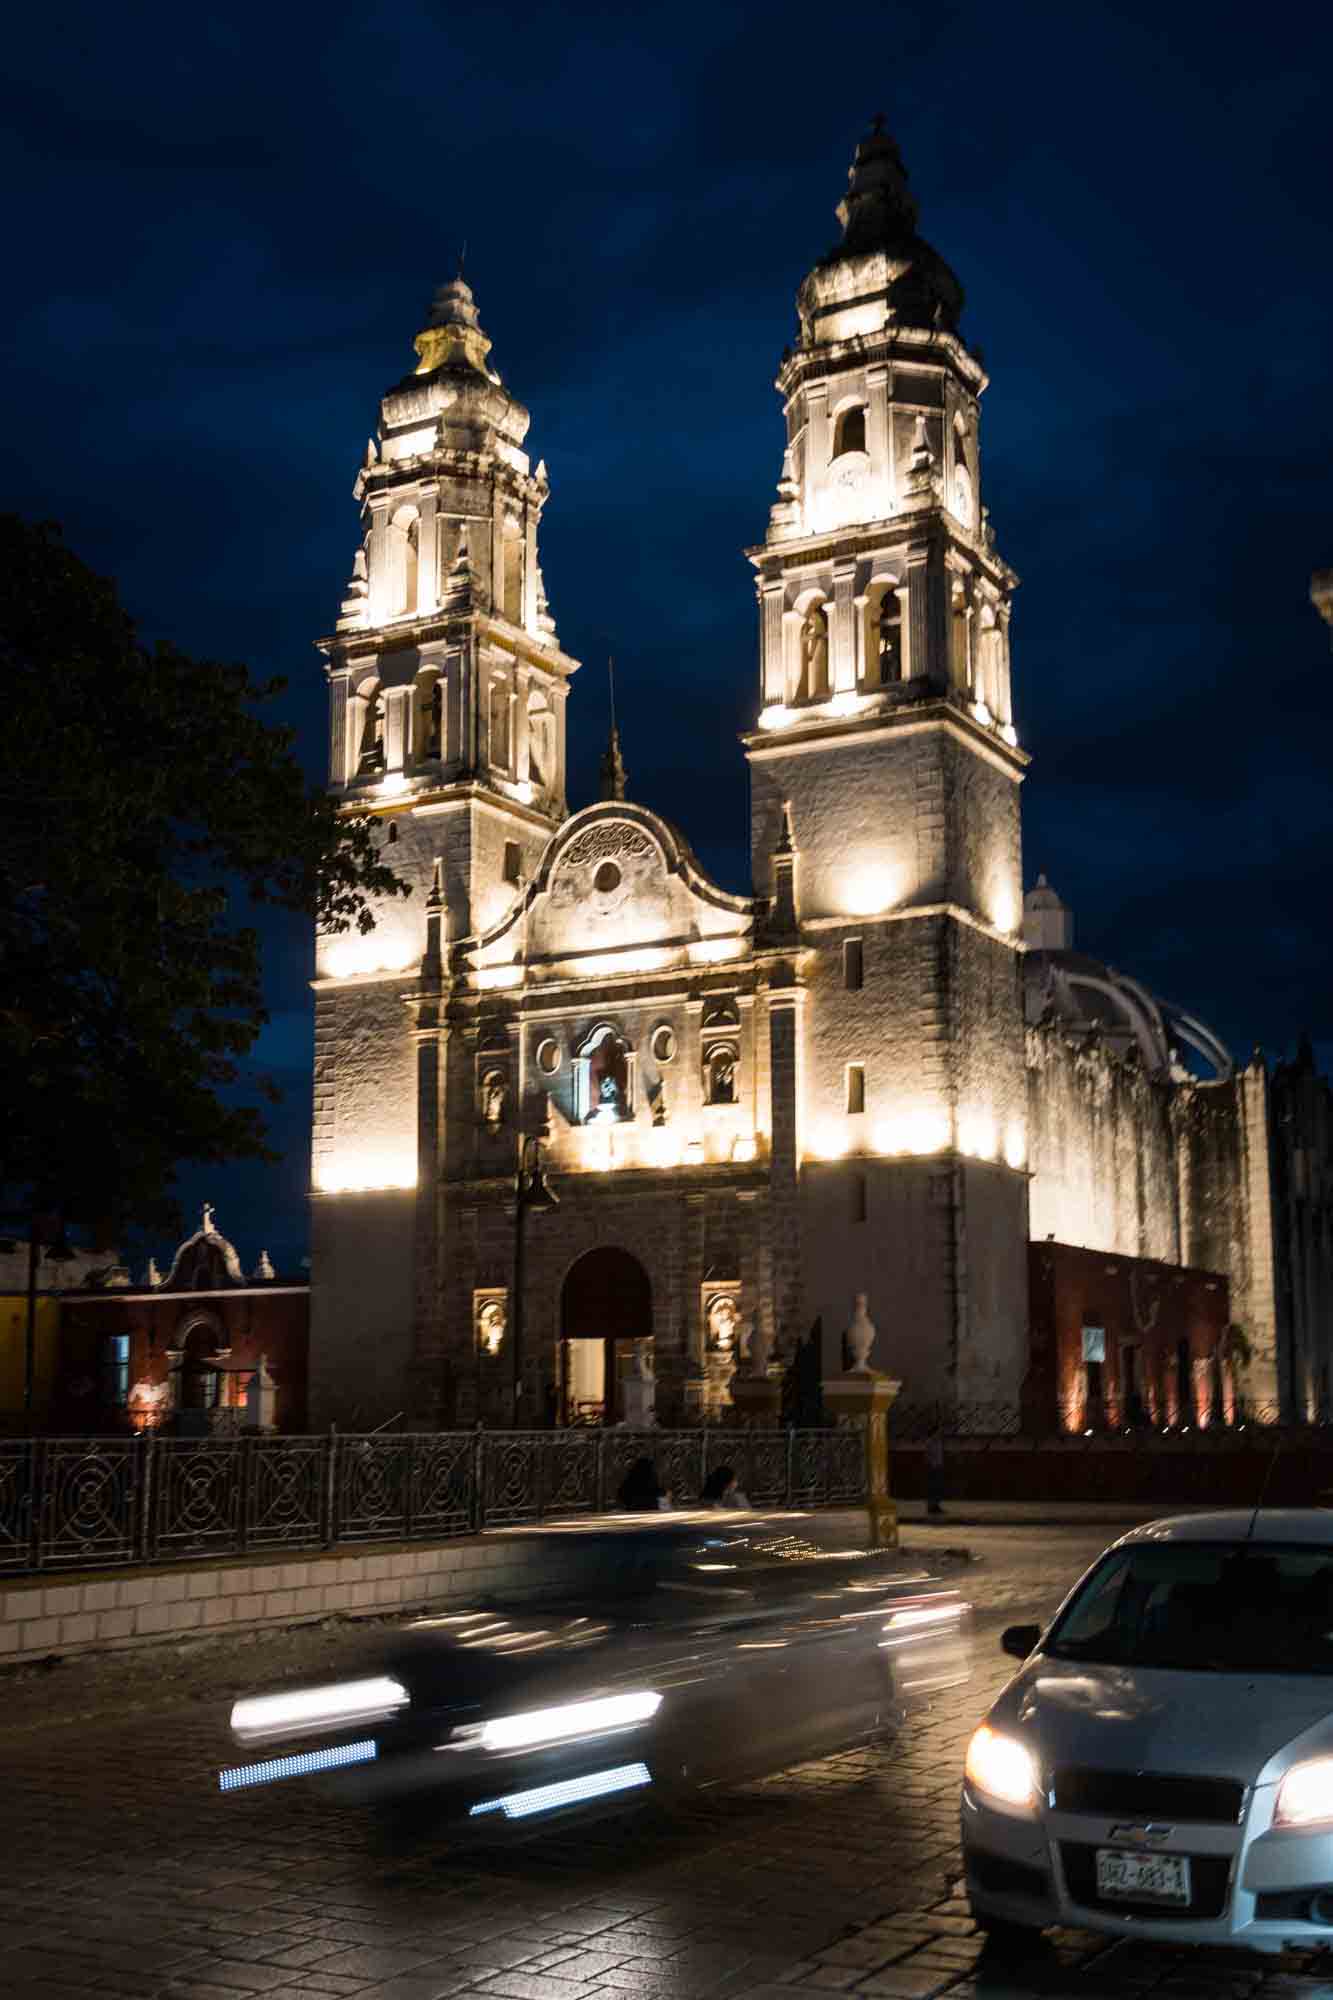 The Catedral de Nuestra Señora de la Inmaculada Concepción in Campeche lit up at night